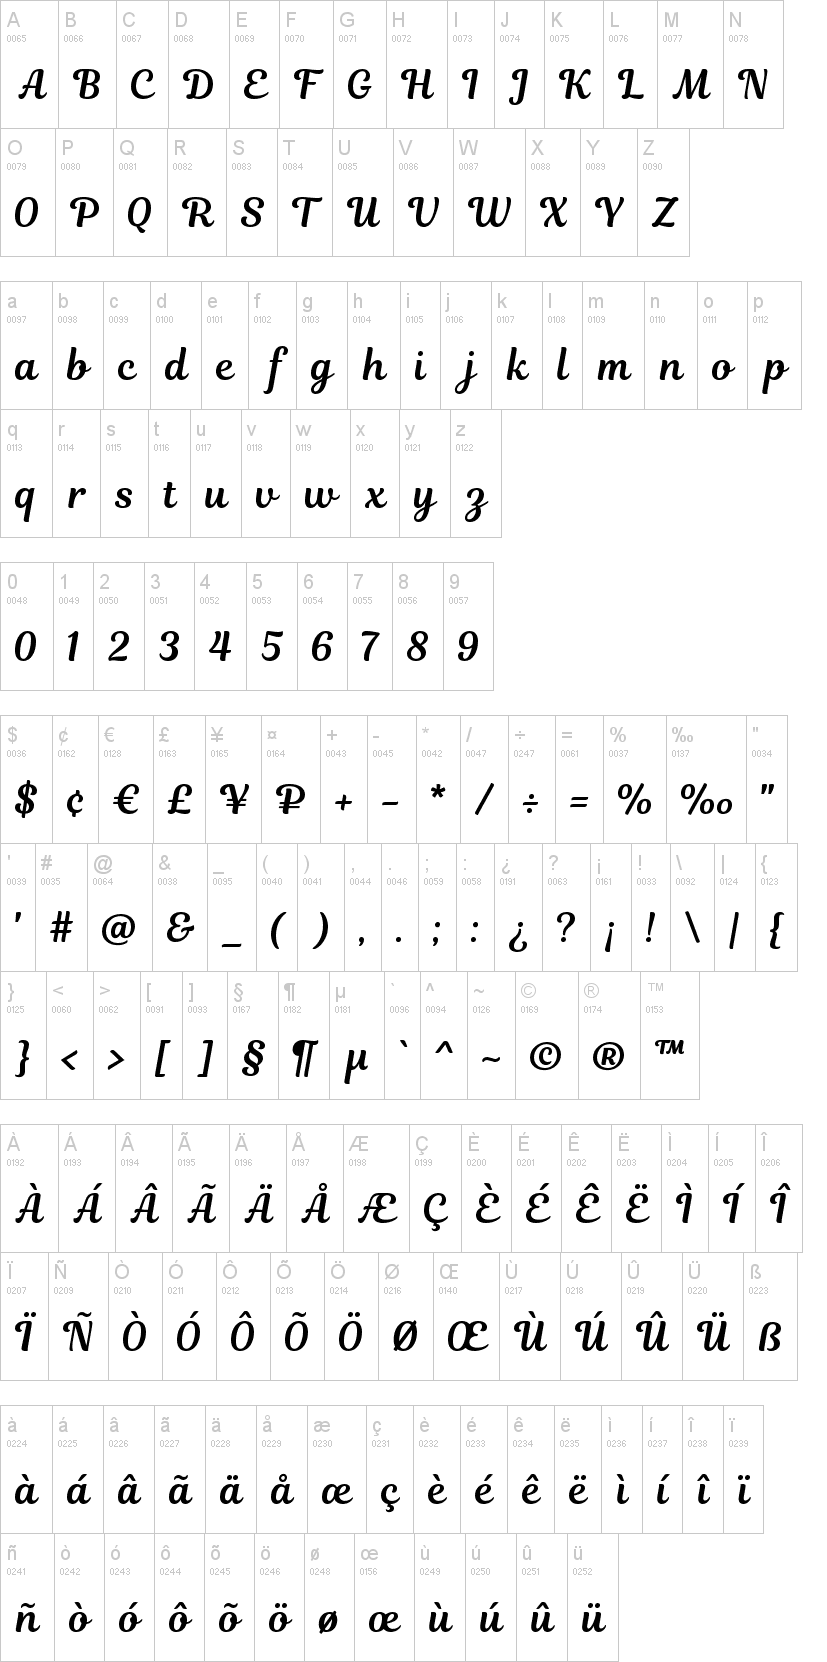 Magnolia Script